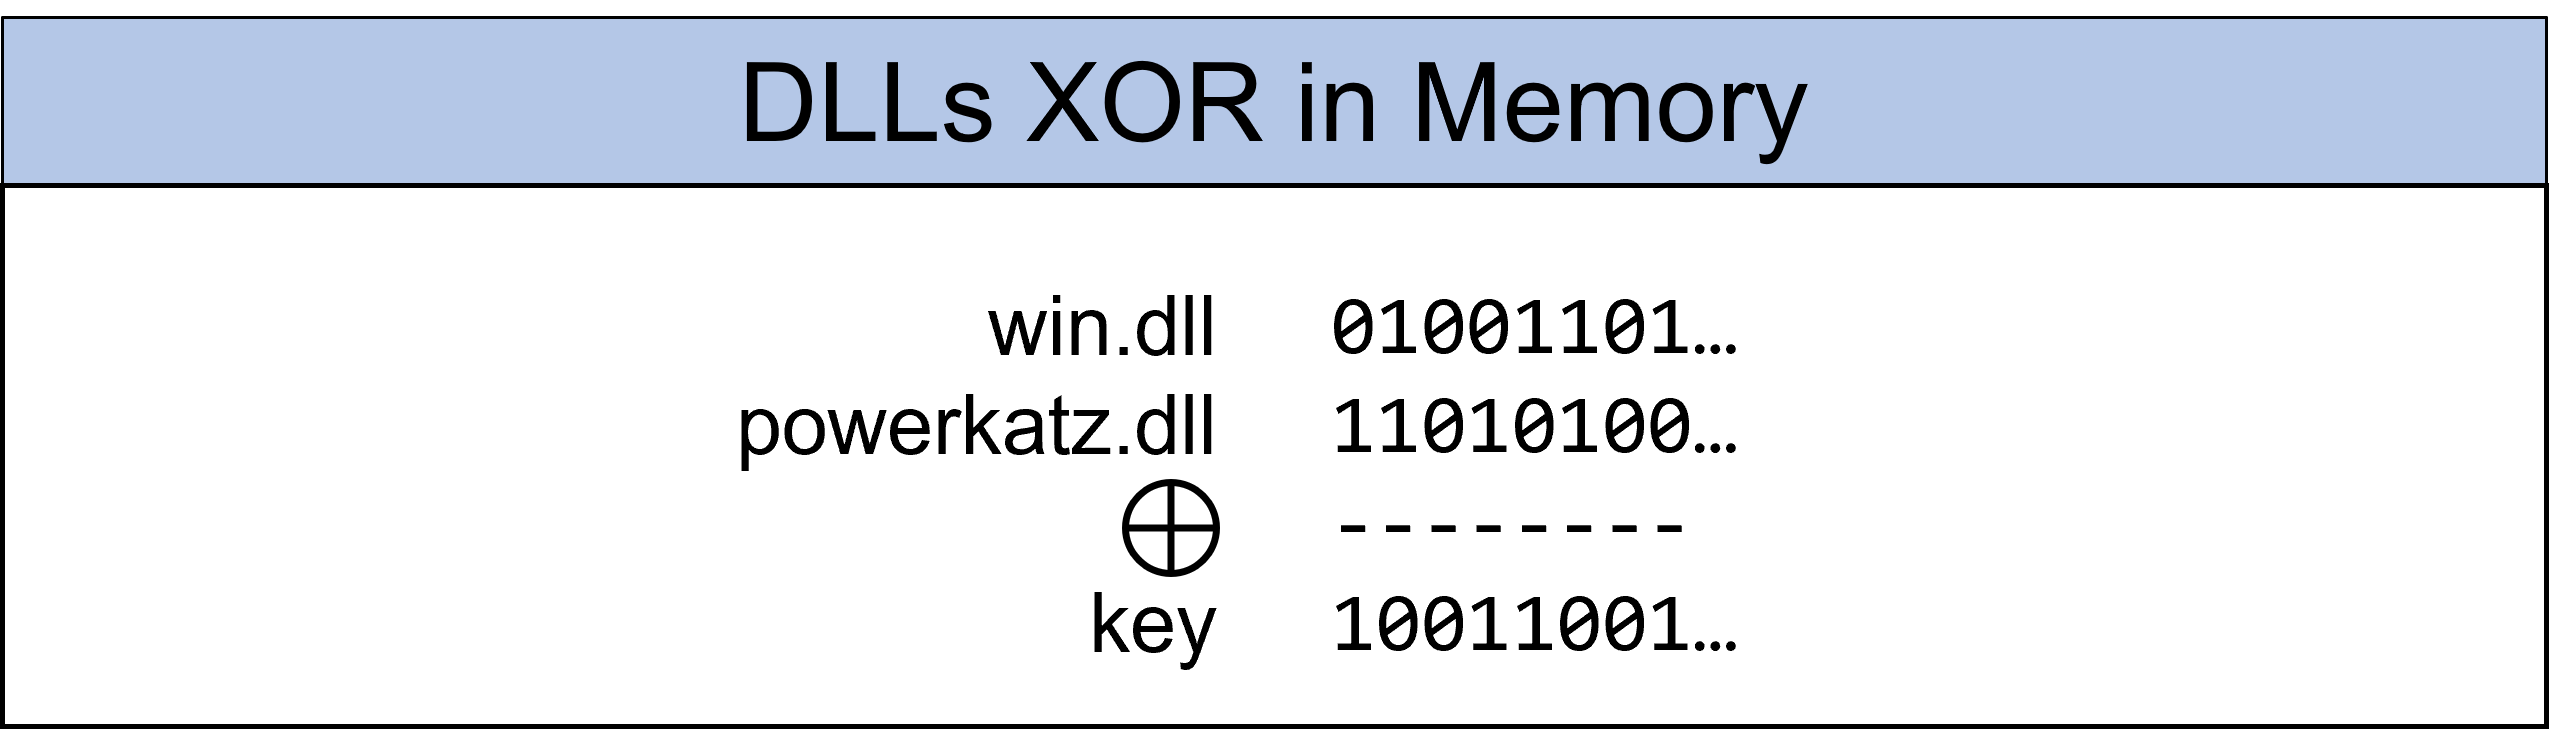 DLLs XOR in memory